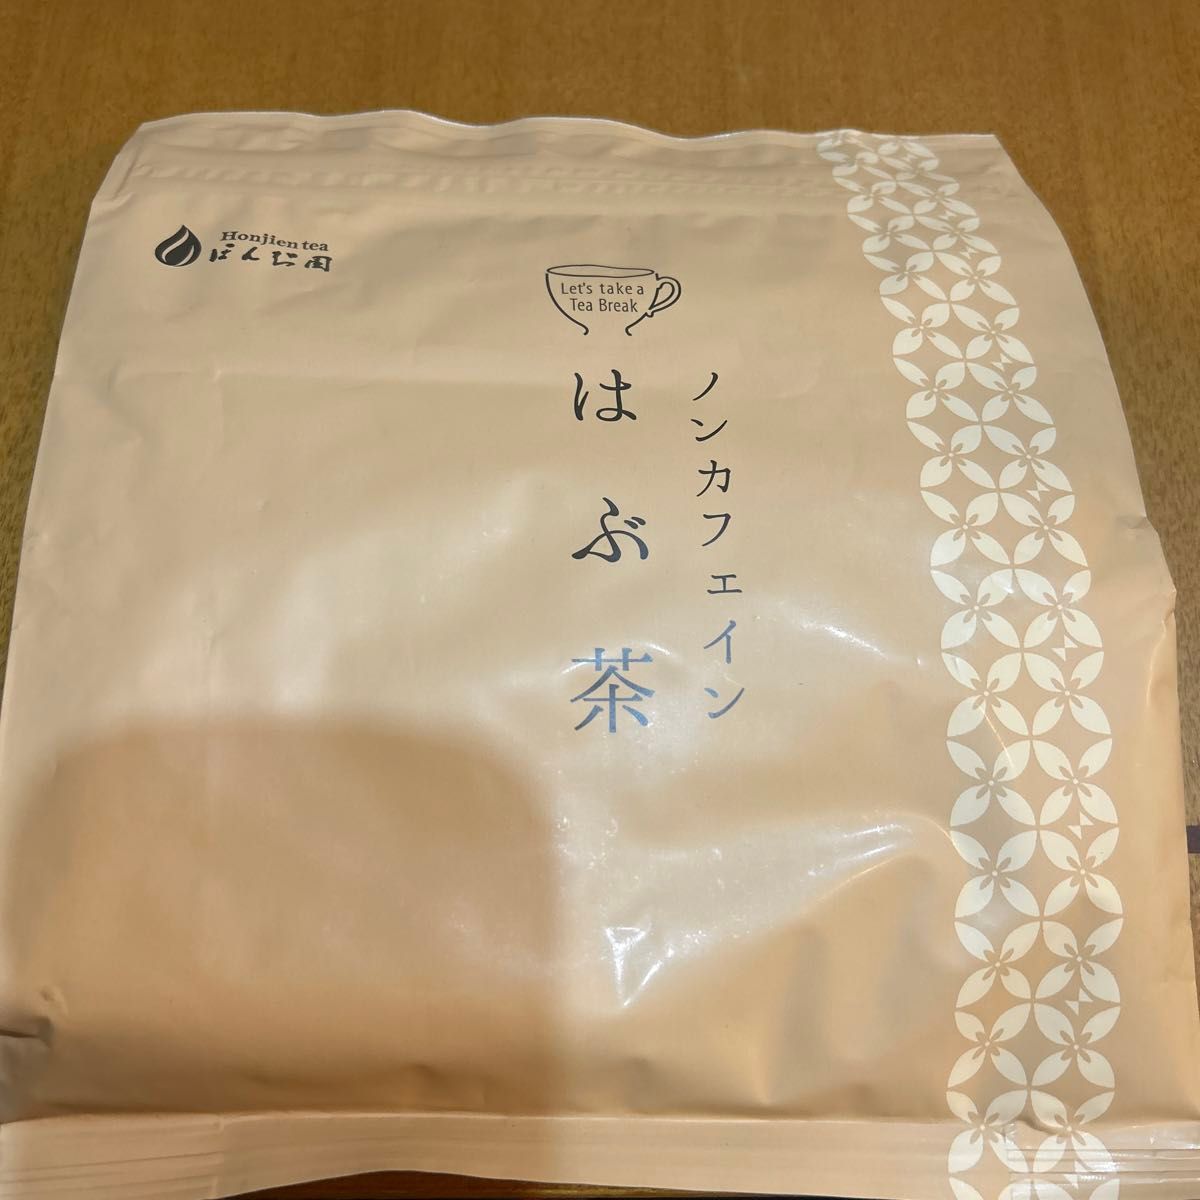 【お値引き不可】はぶ茶 1kg ほんぢ園 賞味期限2026年 2月